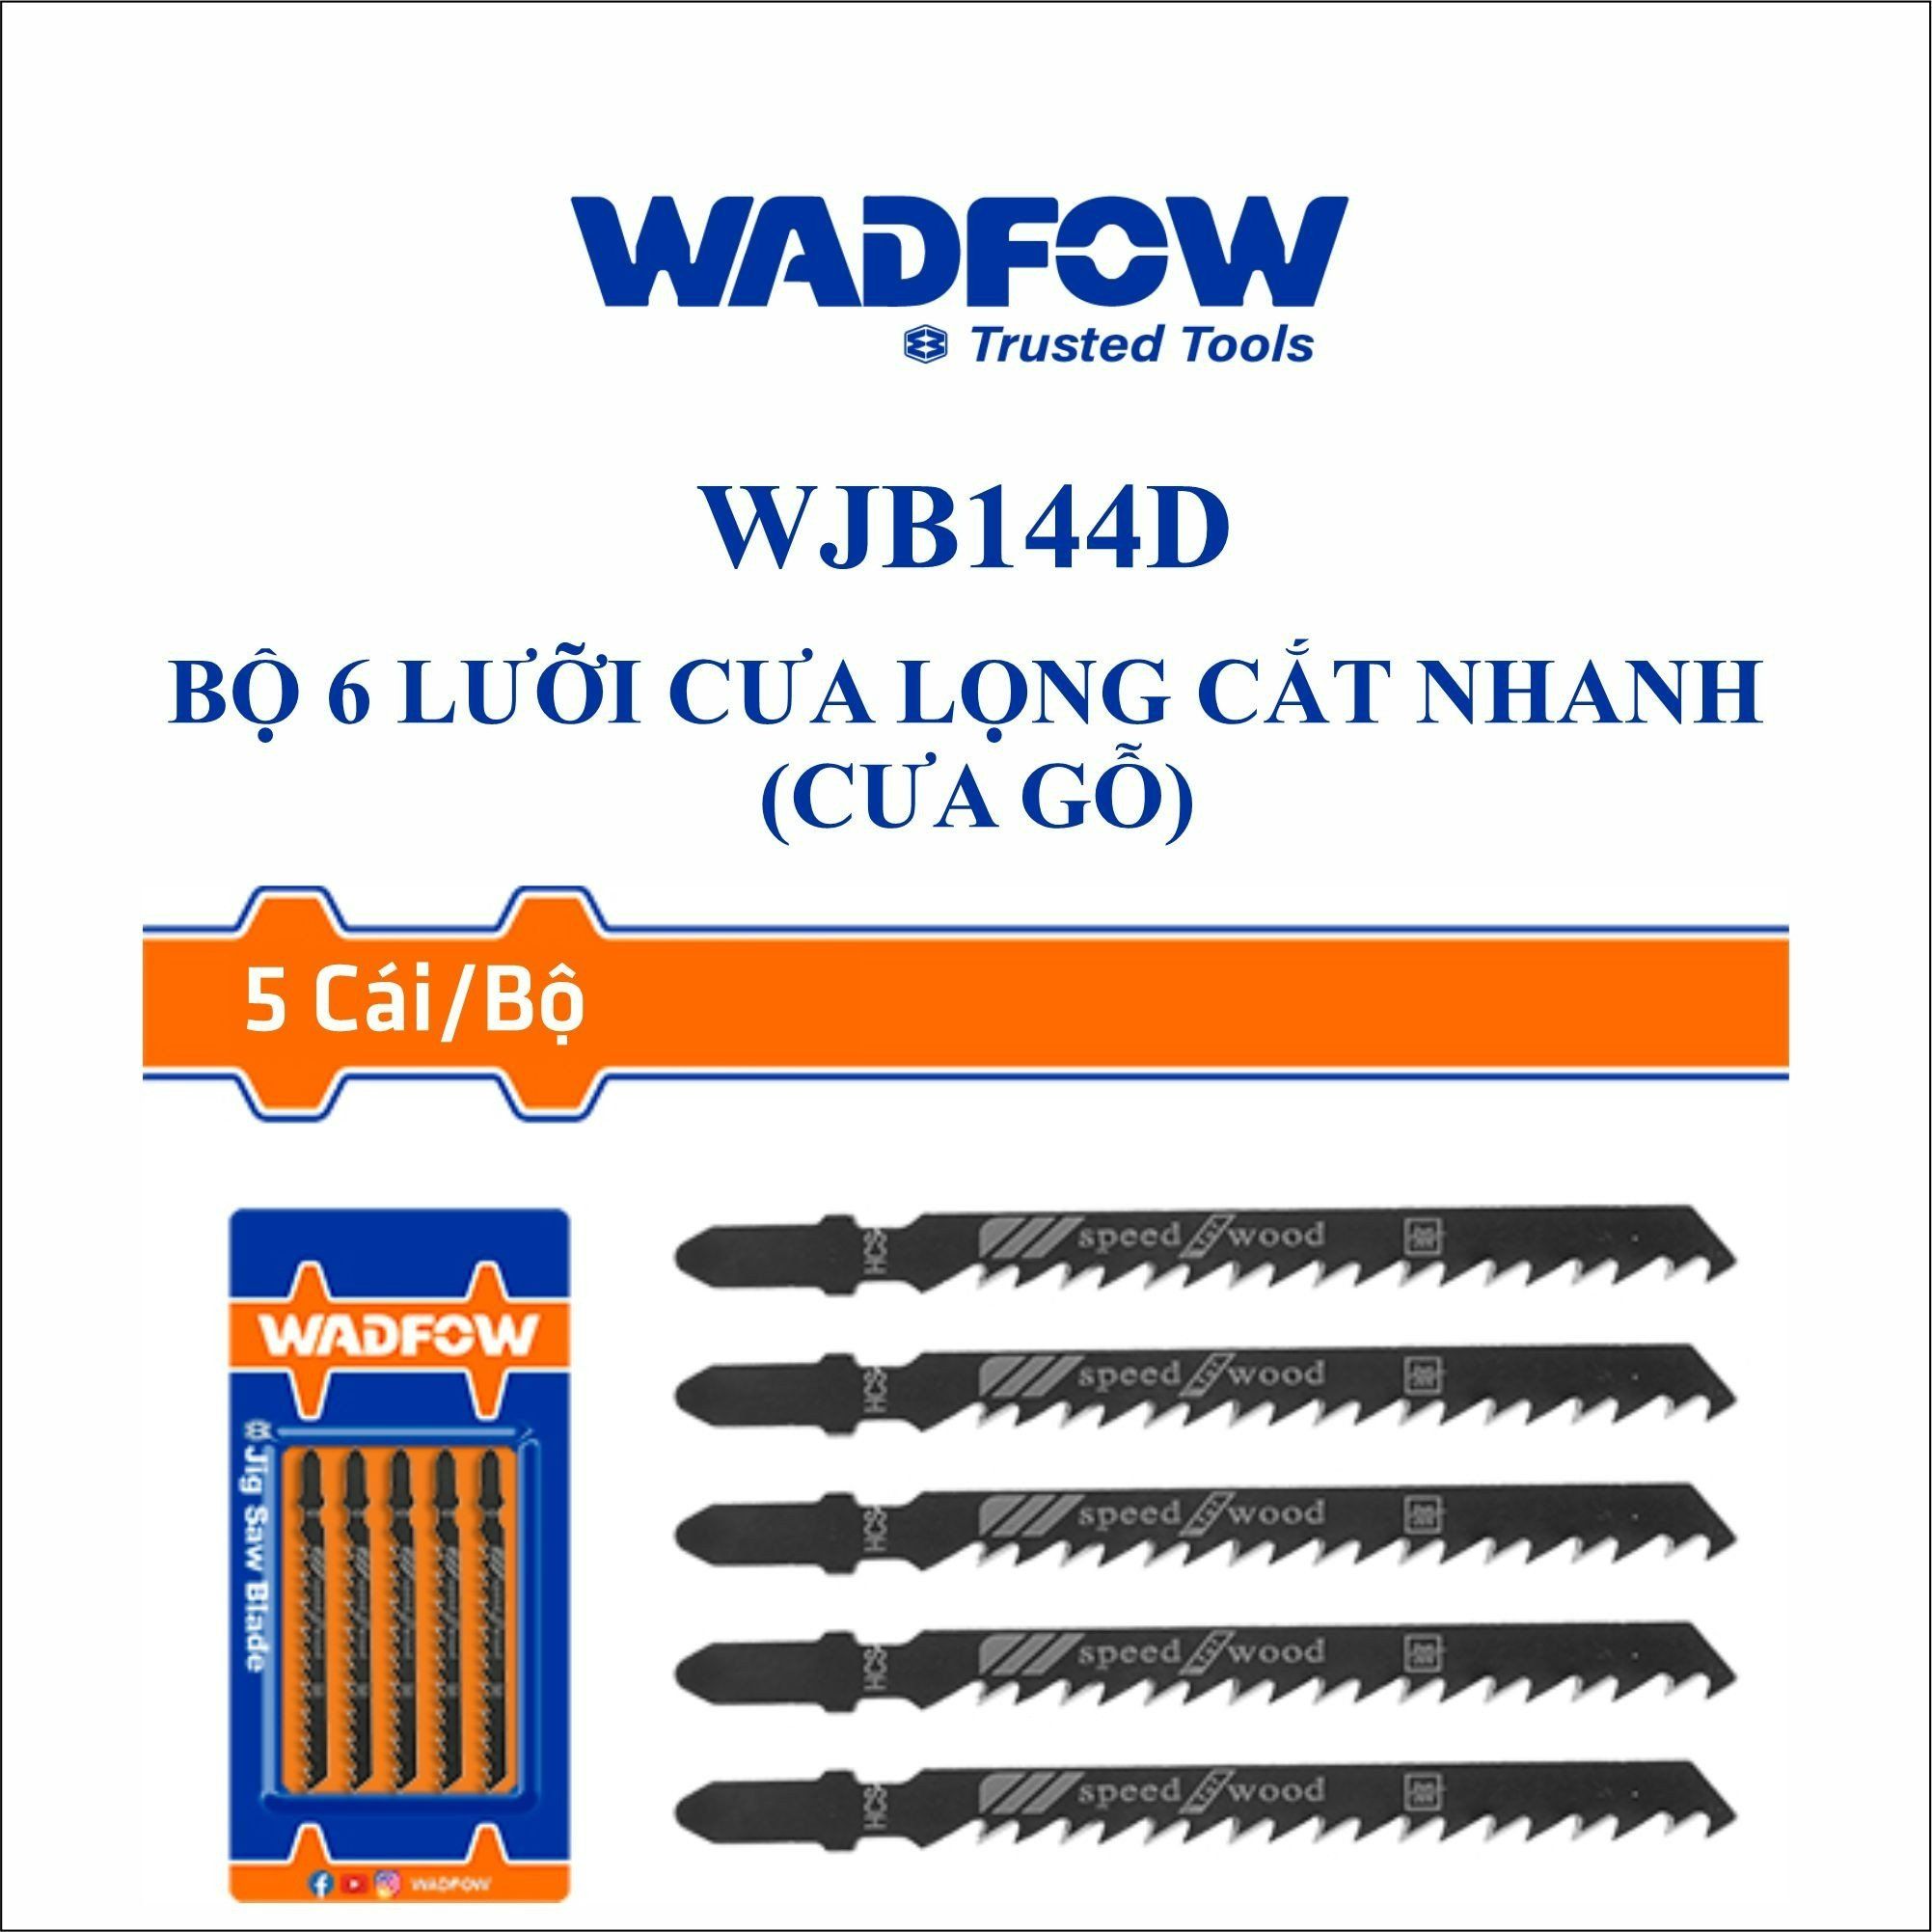  Bộ 5 lưỡi cưa lọng cắt nhanh (cưa gỗ) WADFOW WJB144D 